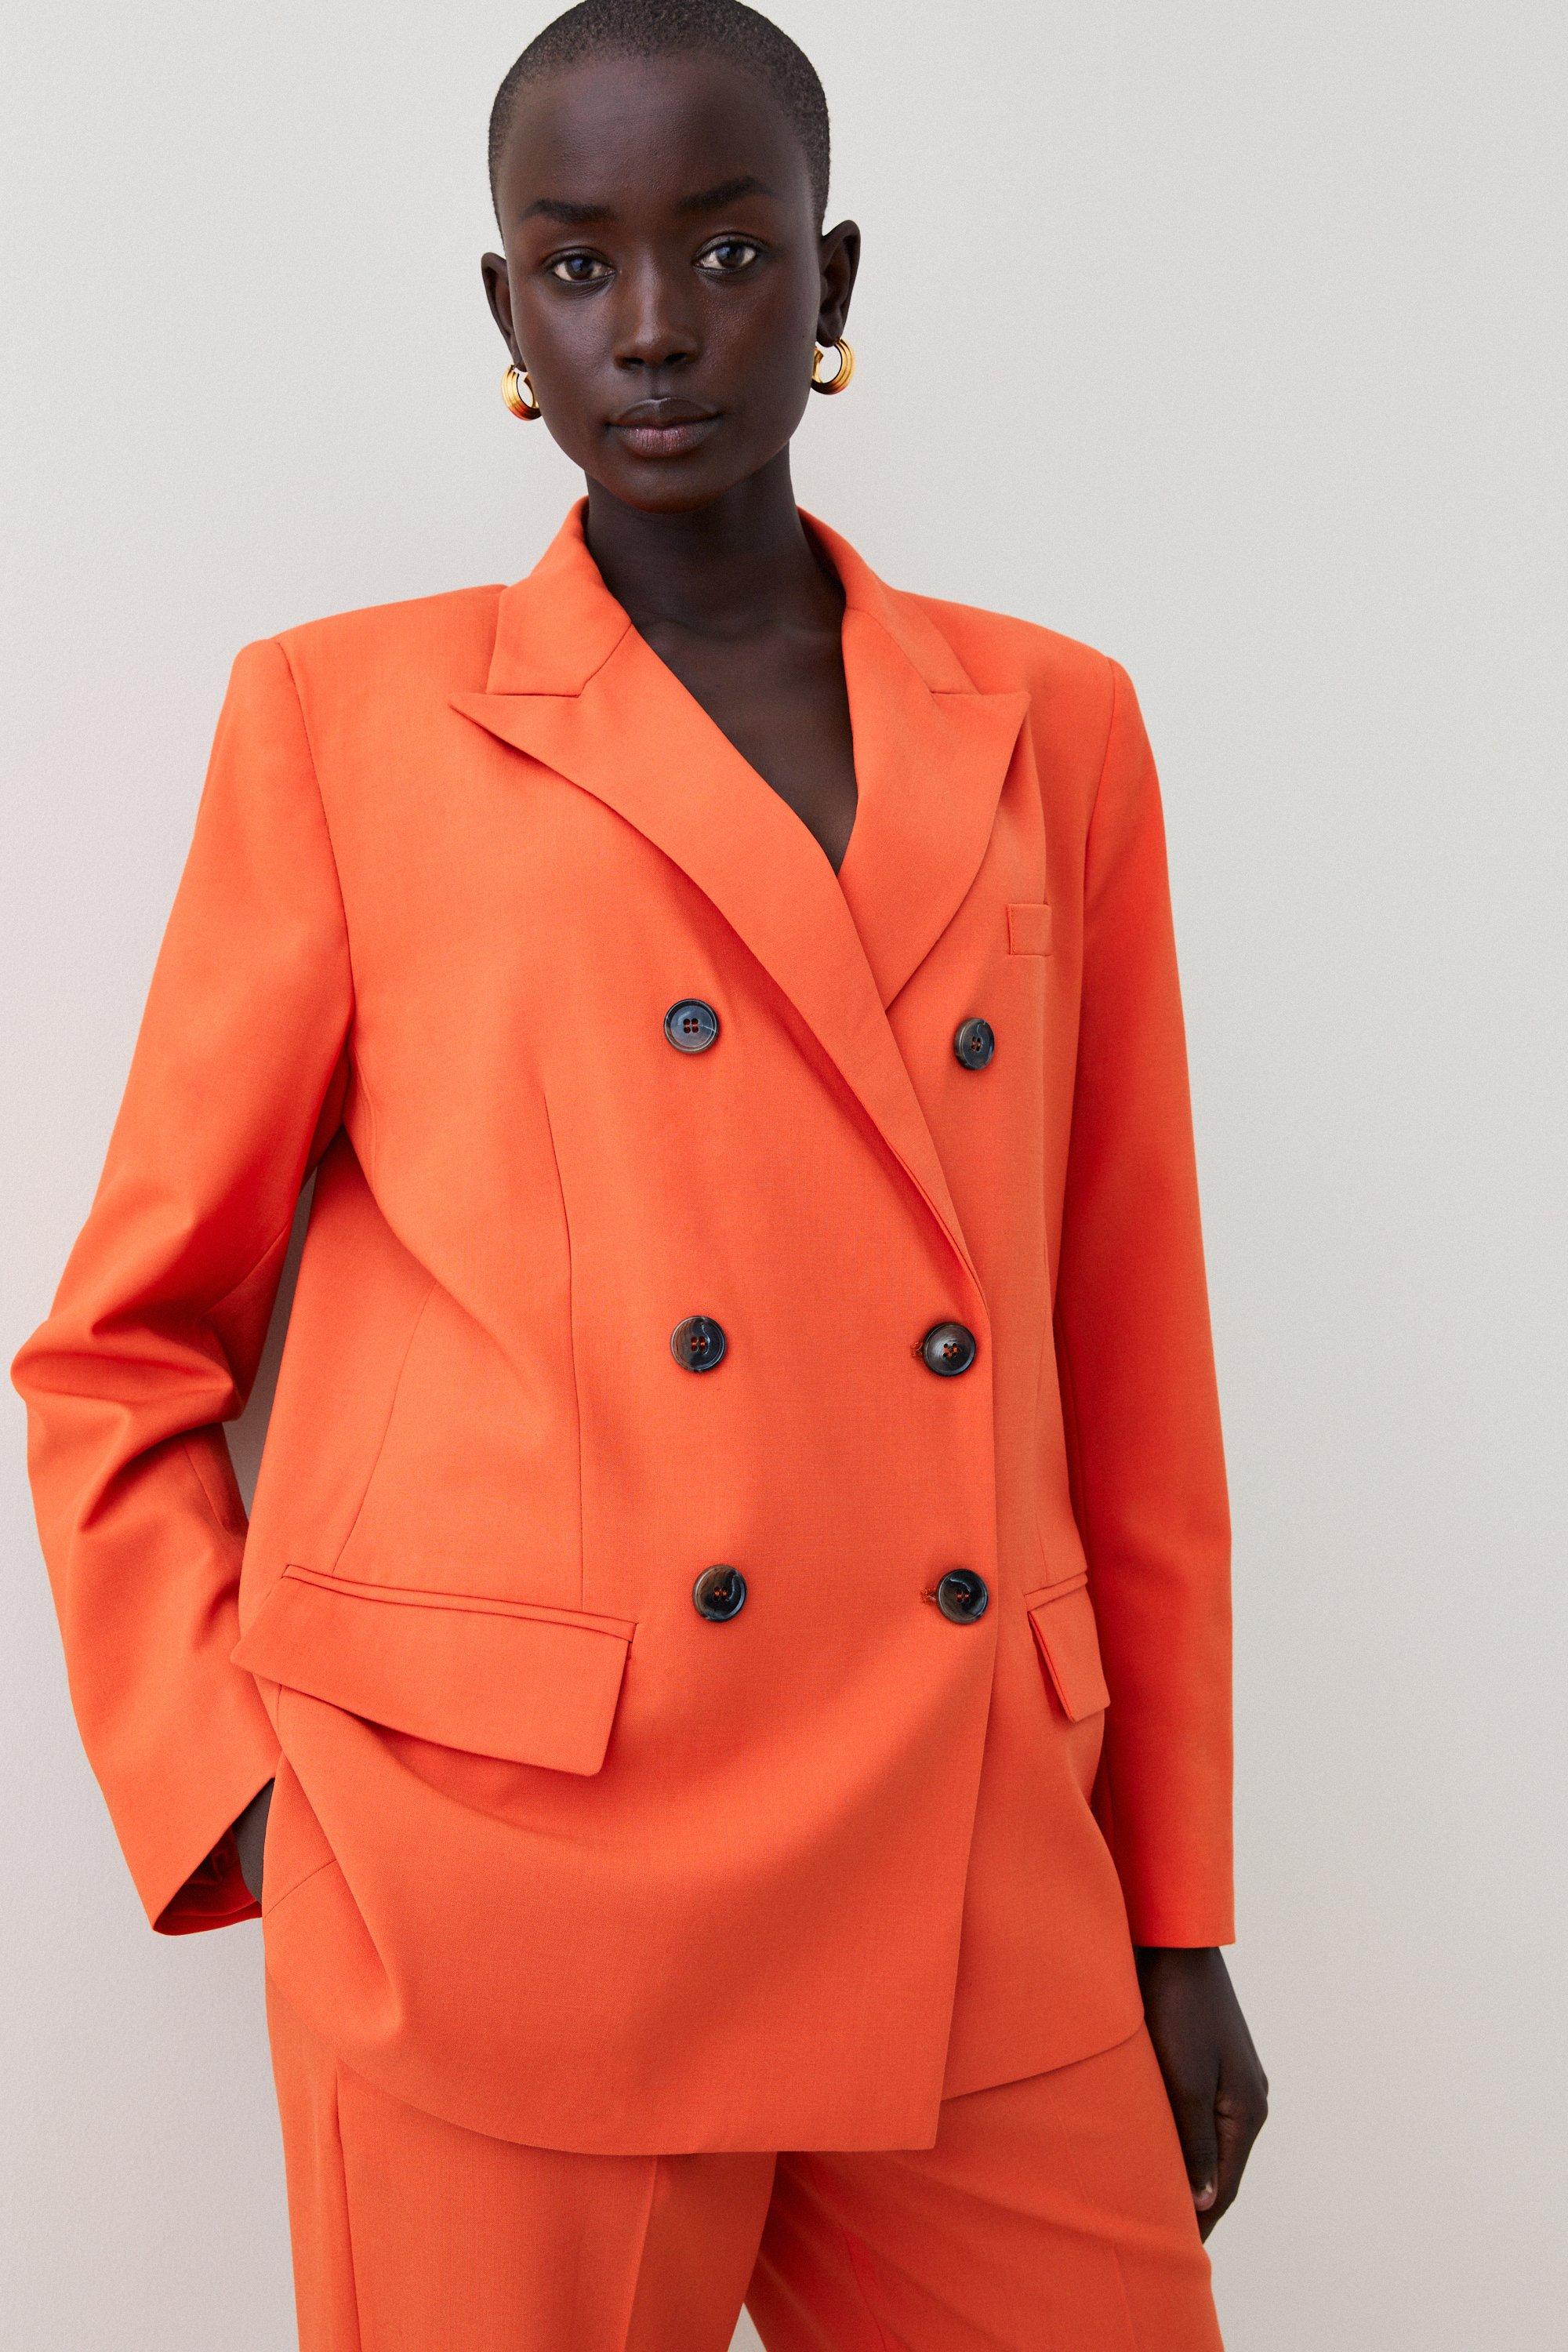 Karen Millen Women's Double Breasted Tailored Coat